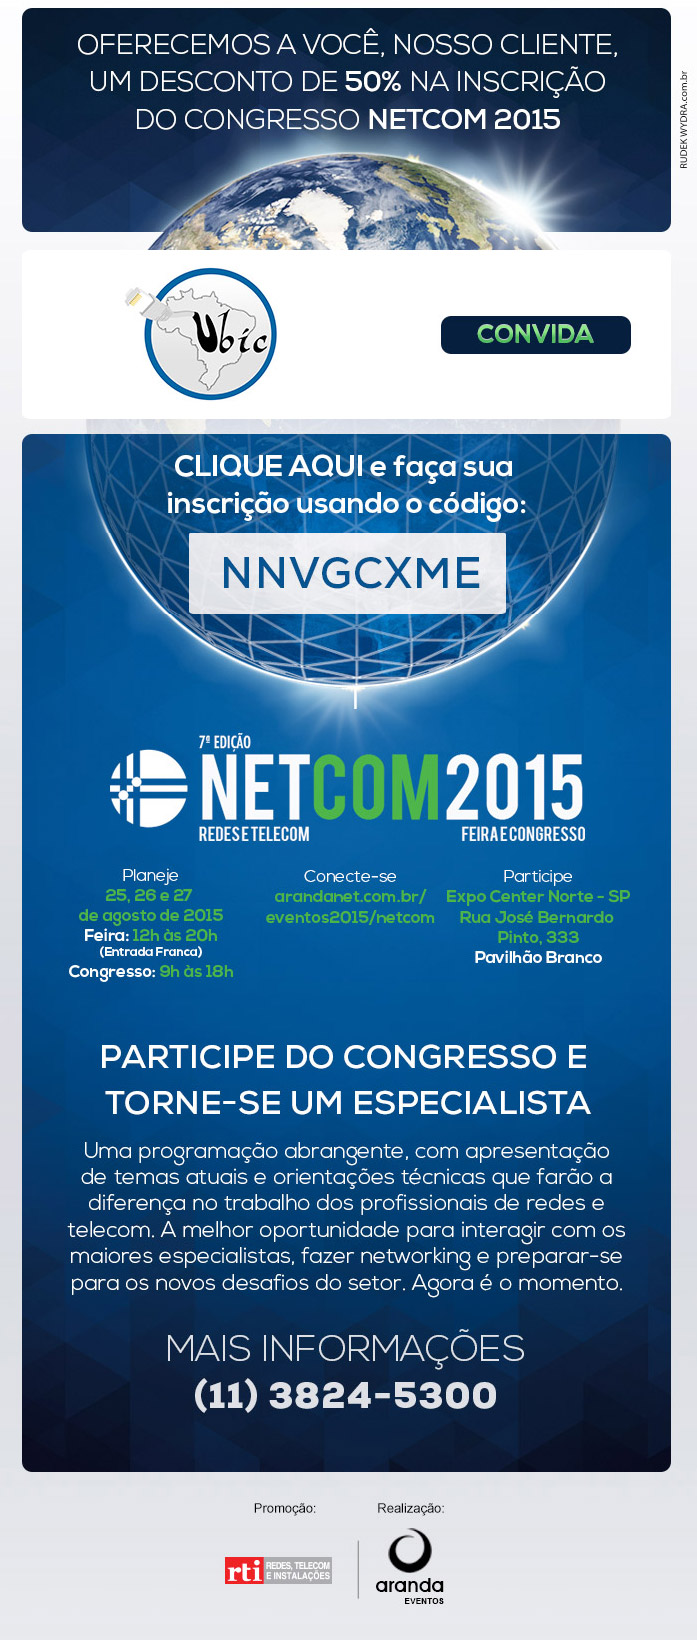 Evento  NetCom 2015 - UBIC -  Participe e Divulgue